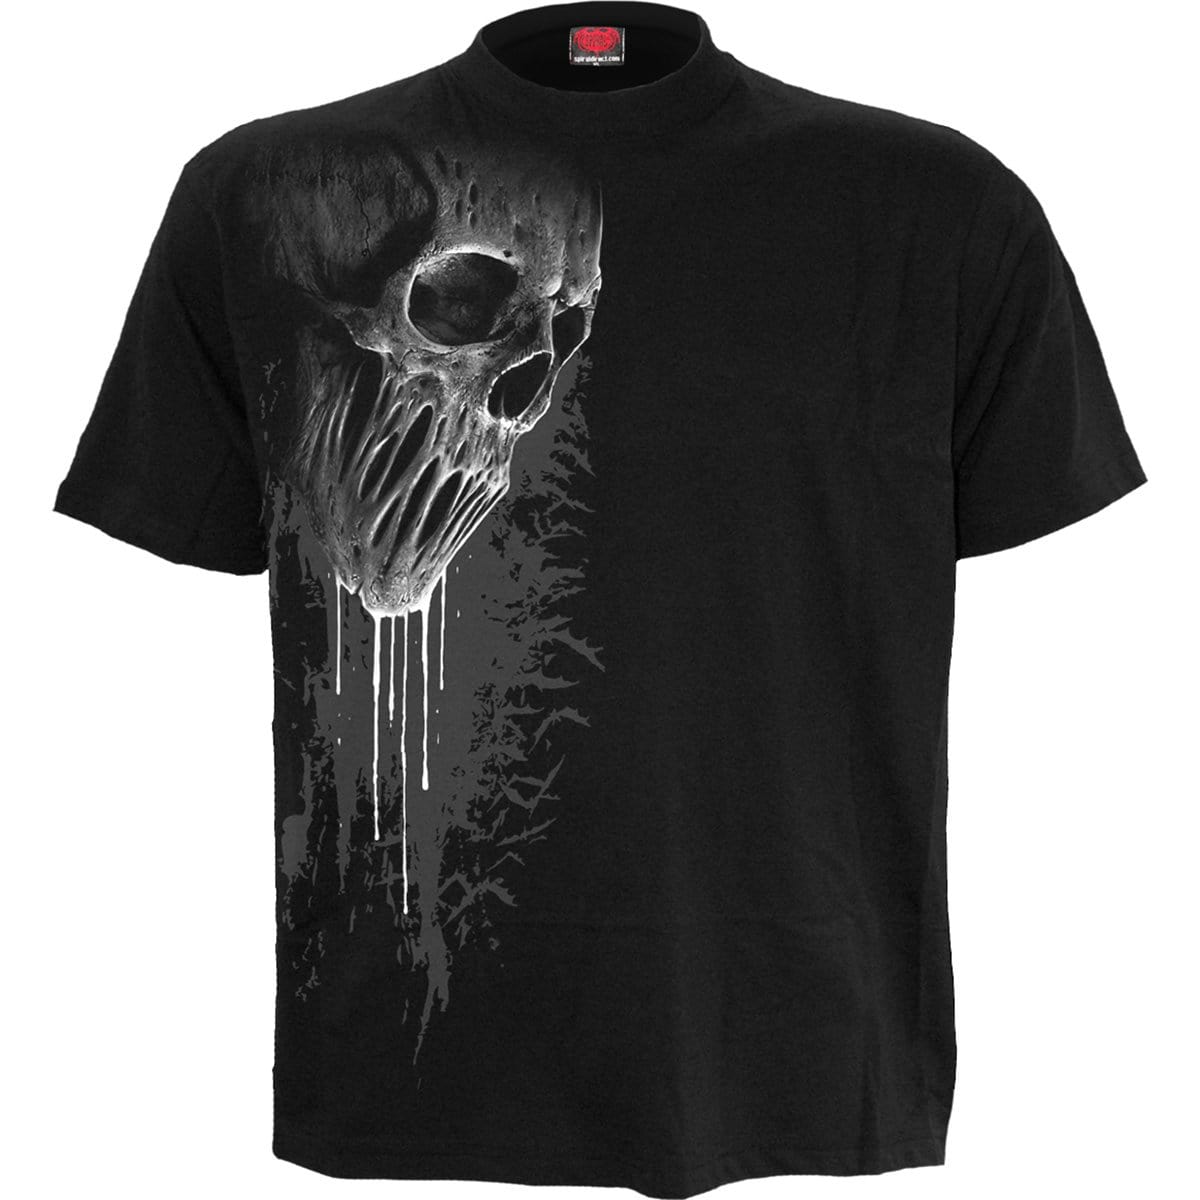 BAT CURSE - Front Print T-Shirt Black - Spiral USA